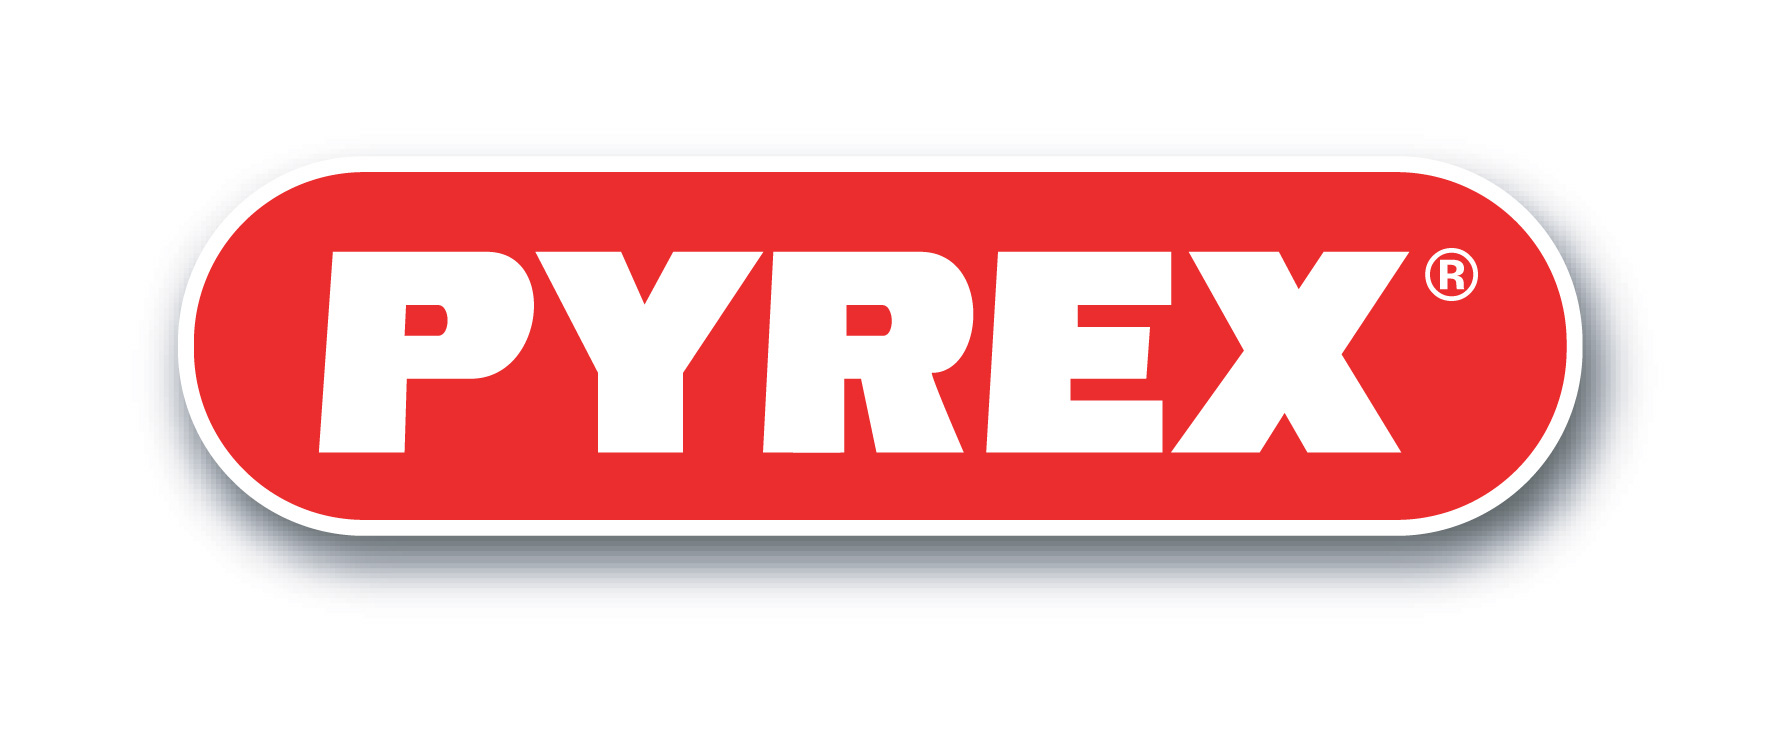 Pyrex logo